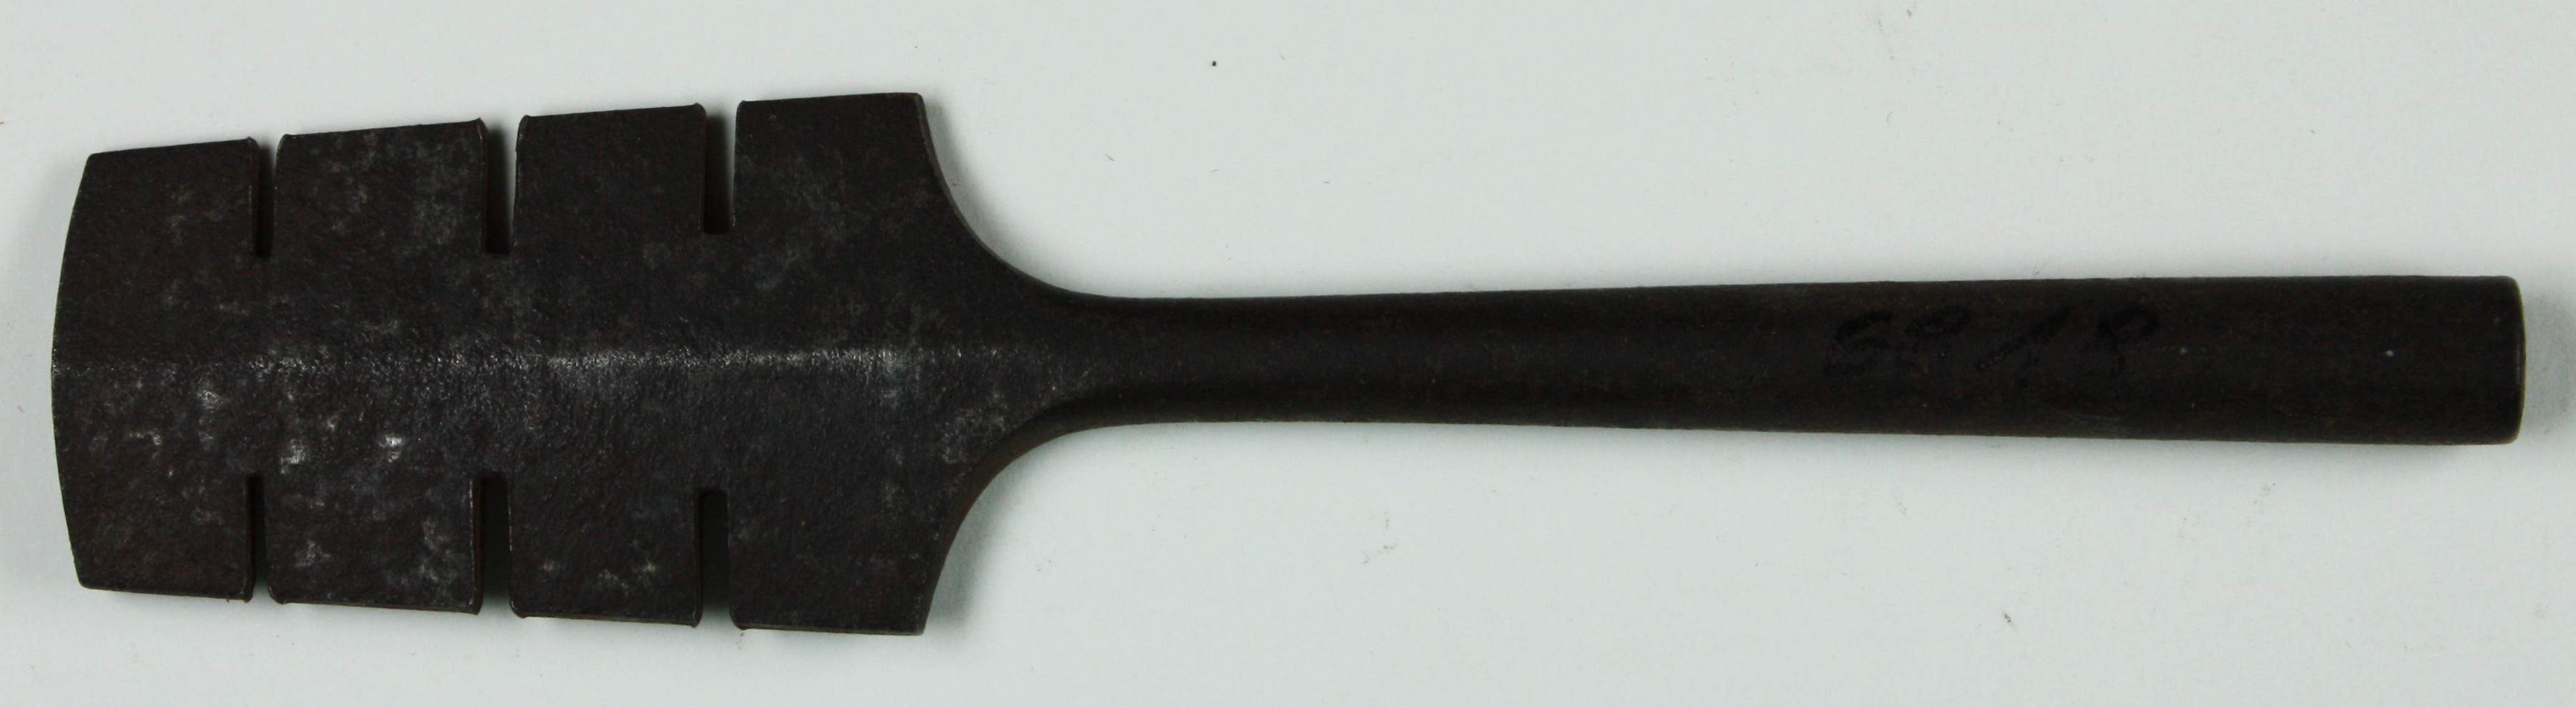 Werkzeug Sattlerei (Museum Wolmirstedt RR-F)